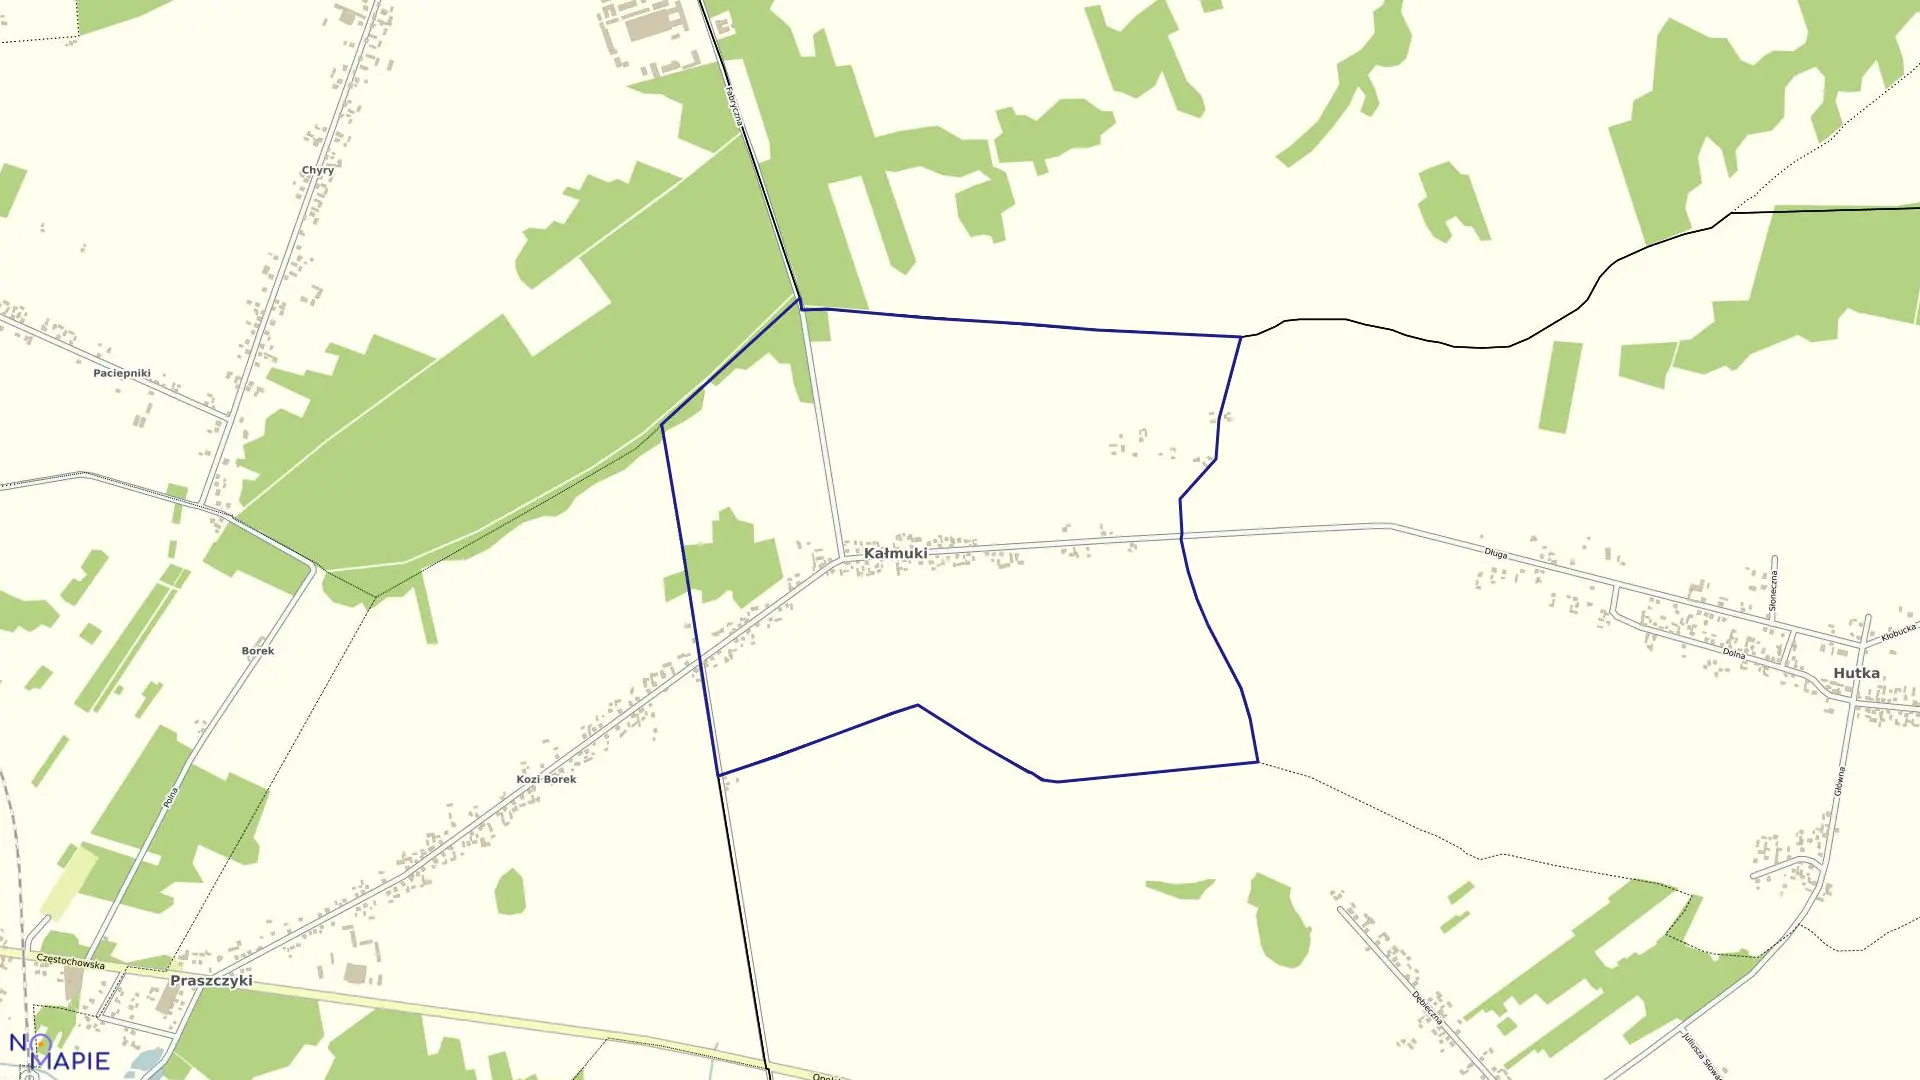 Mapa obrębu Kałmuki w gminie Panki